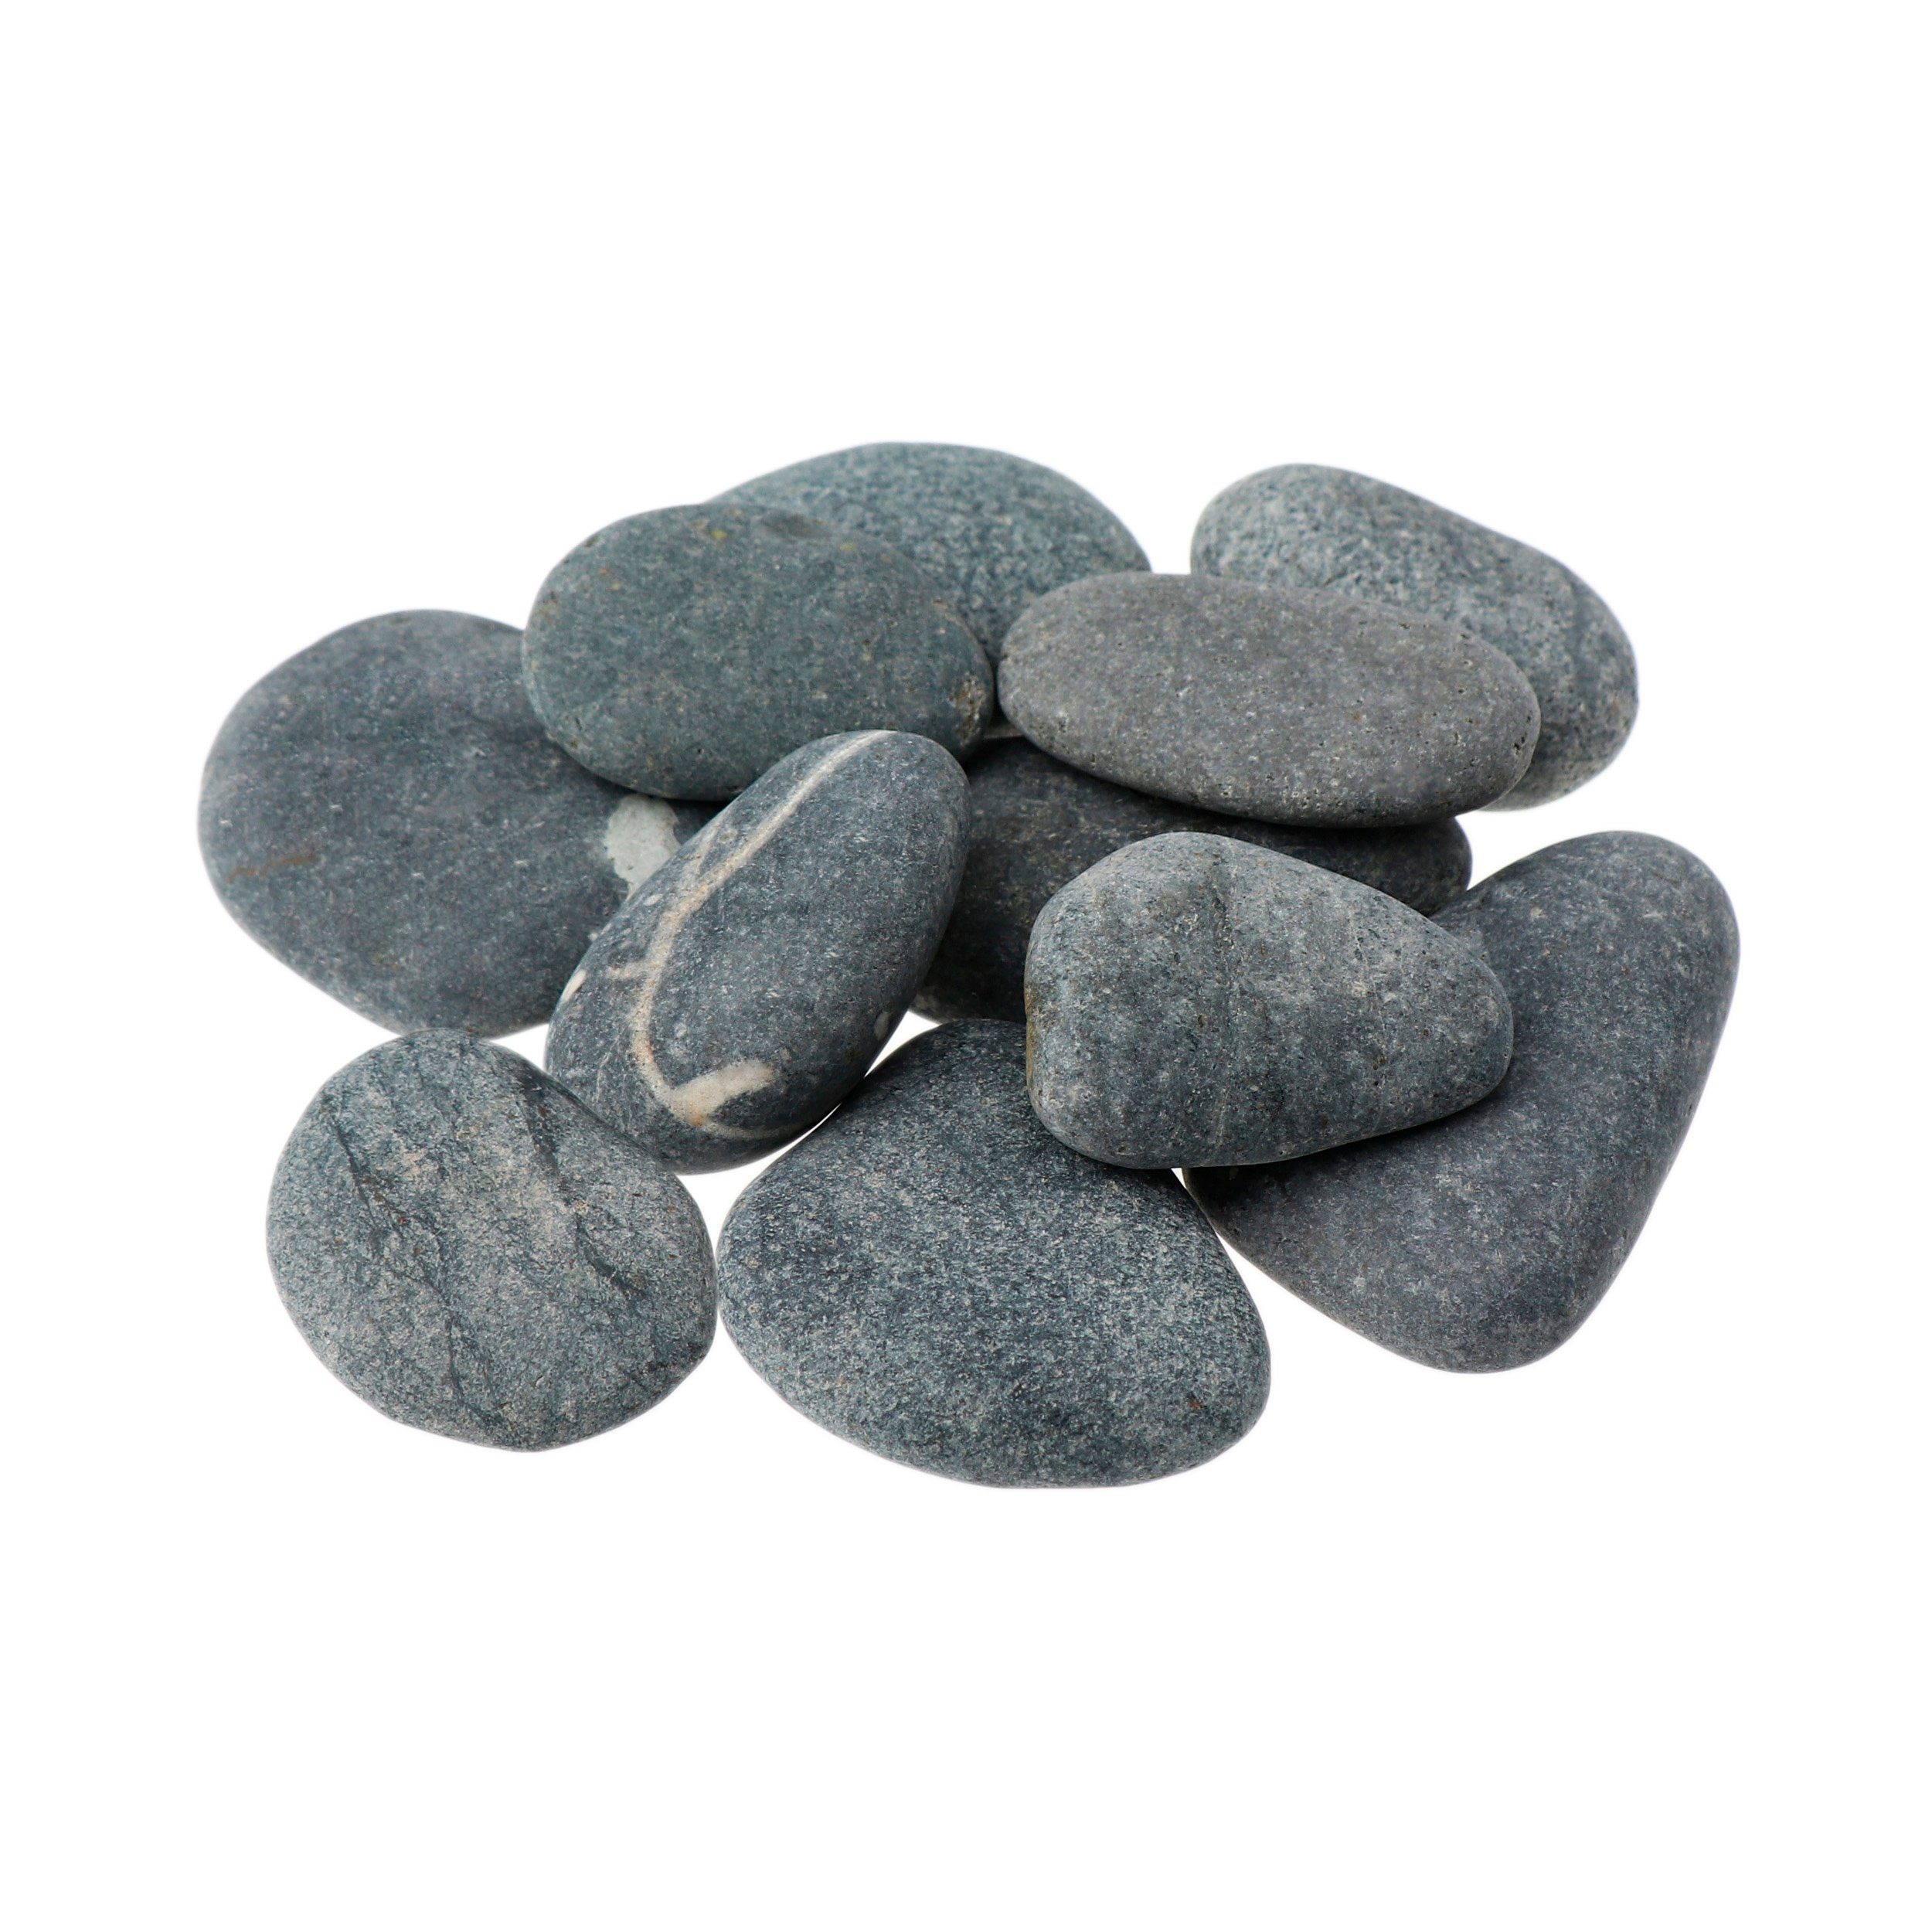 vulk Entspannungsstein NKlaus 60mm 50 Wellness Stone Massagesteine - Mineralstein Hot 500g